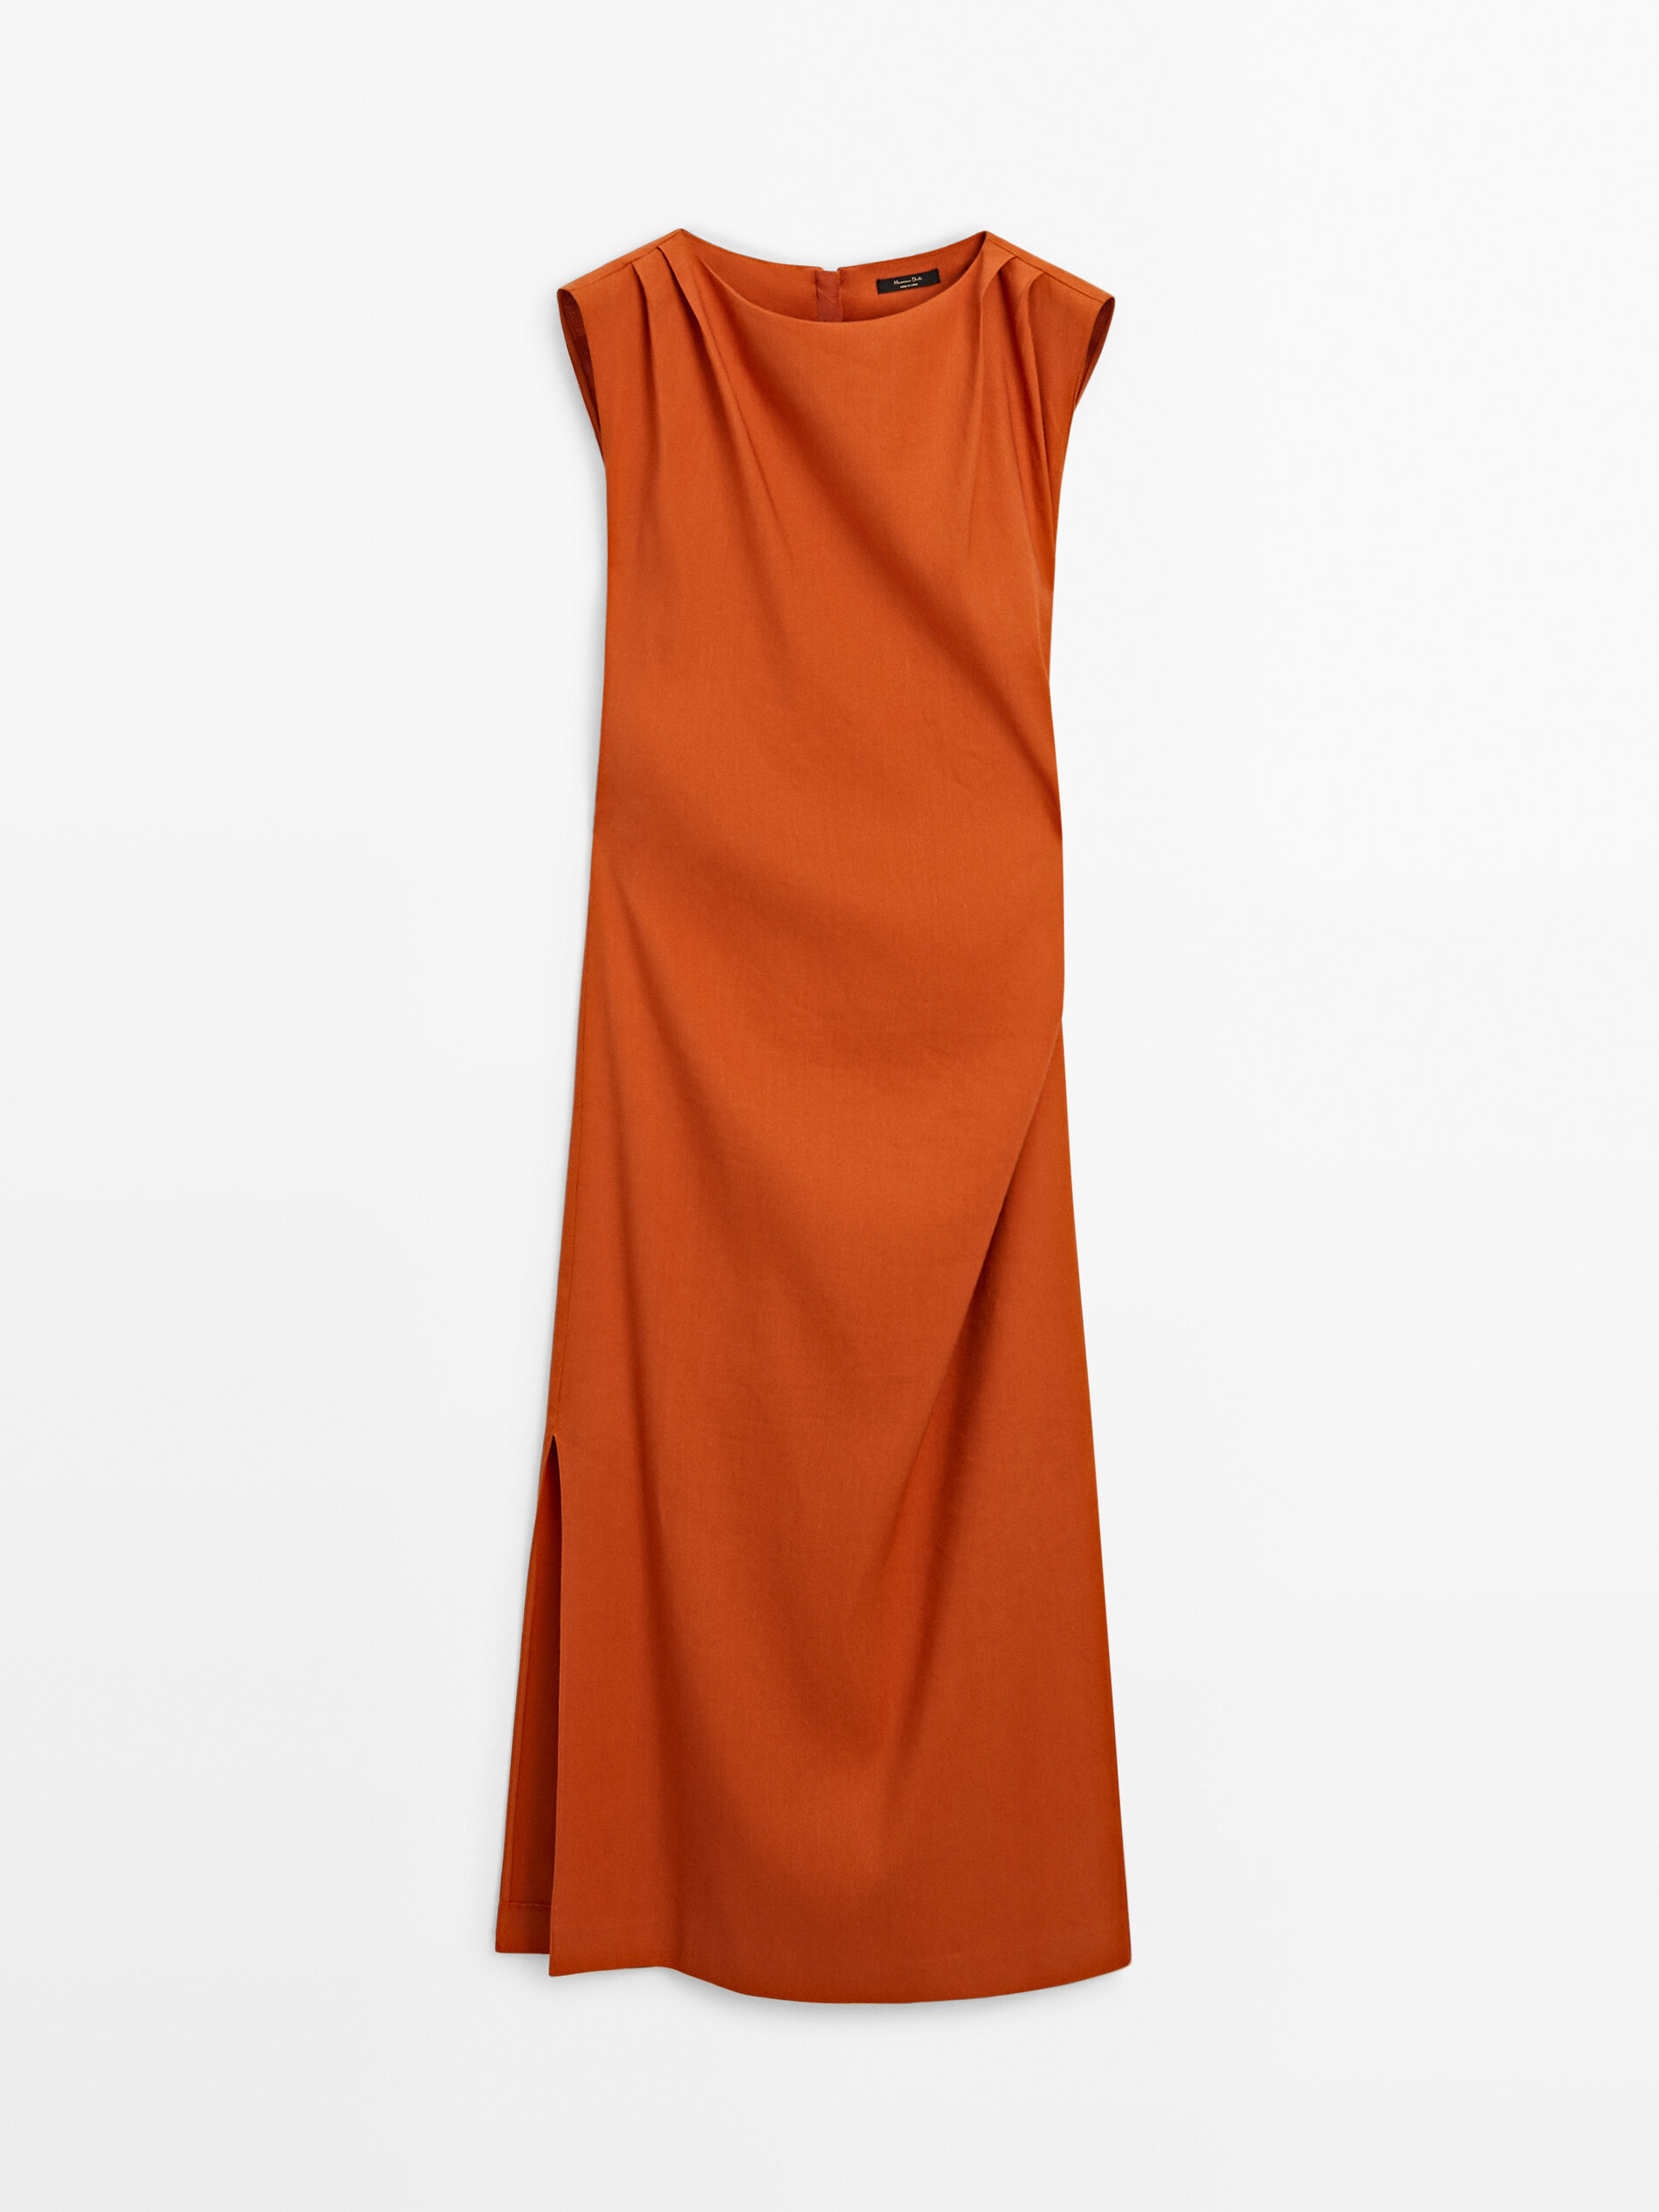 Renueva tu armario con el vestido midi con pliegues de Massimo Dutti que te har sentir fabulosa a los 60 aos